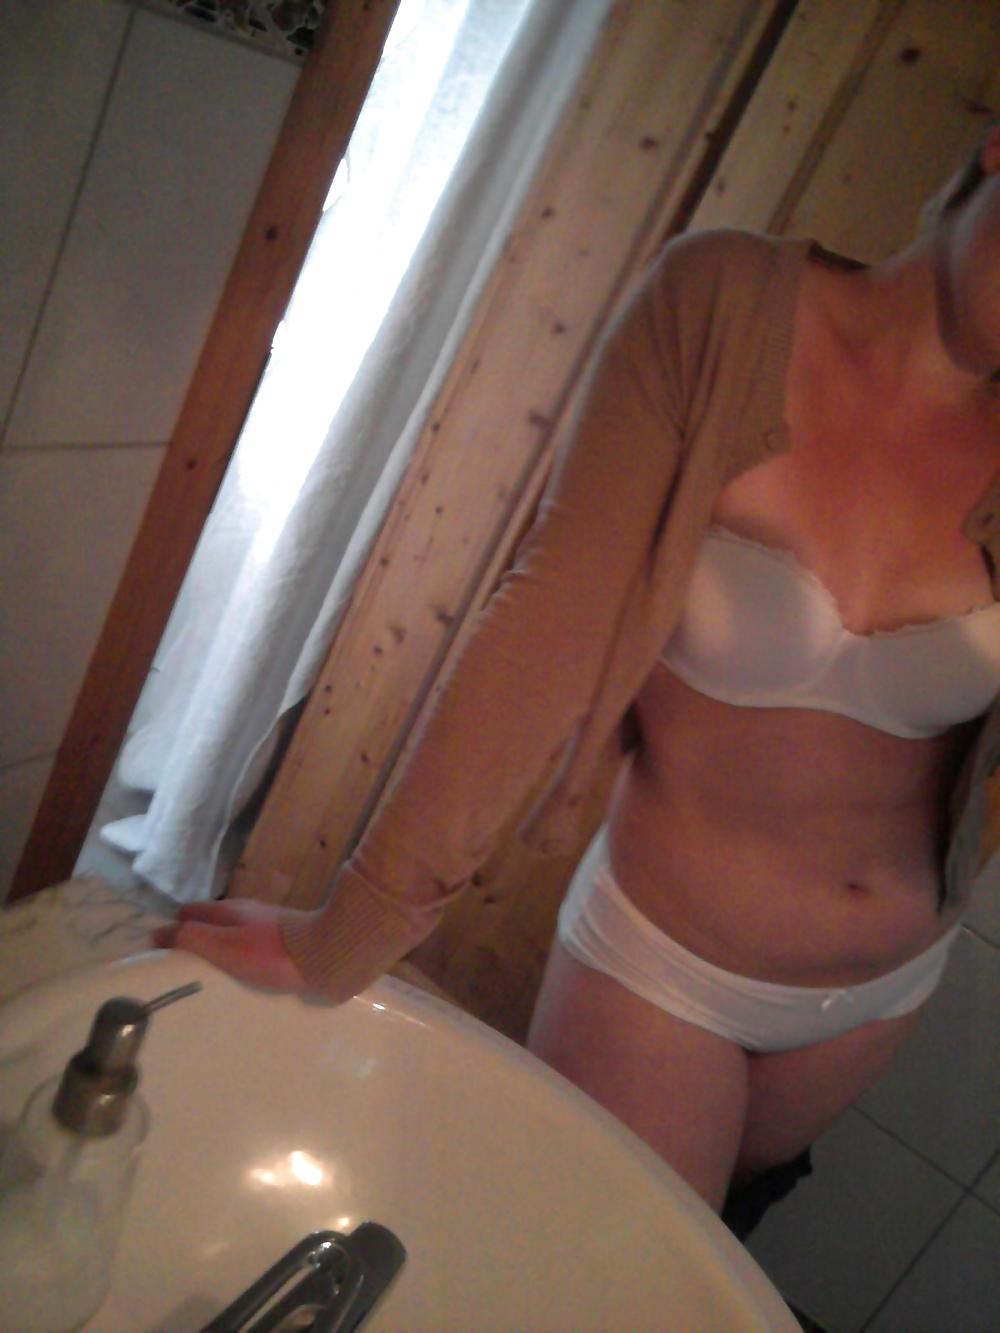 Sexy amatoriale tedesco fatto in casa ex fidanzata masturbarsi parte 2
 #6419592